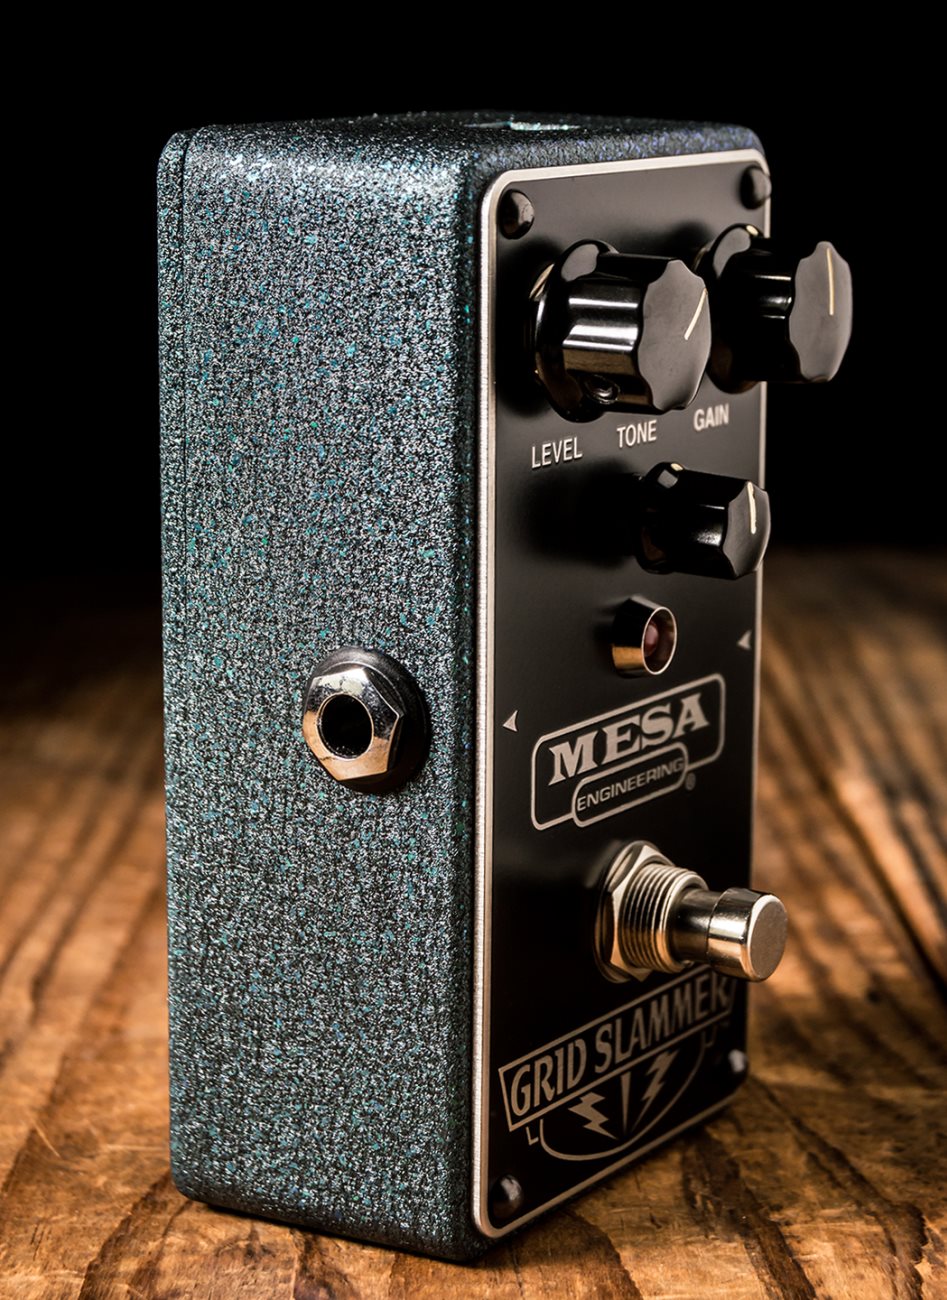 Mesa Boogie Grid Slammer Overdrive Pedal | NStuffmusic.com